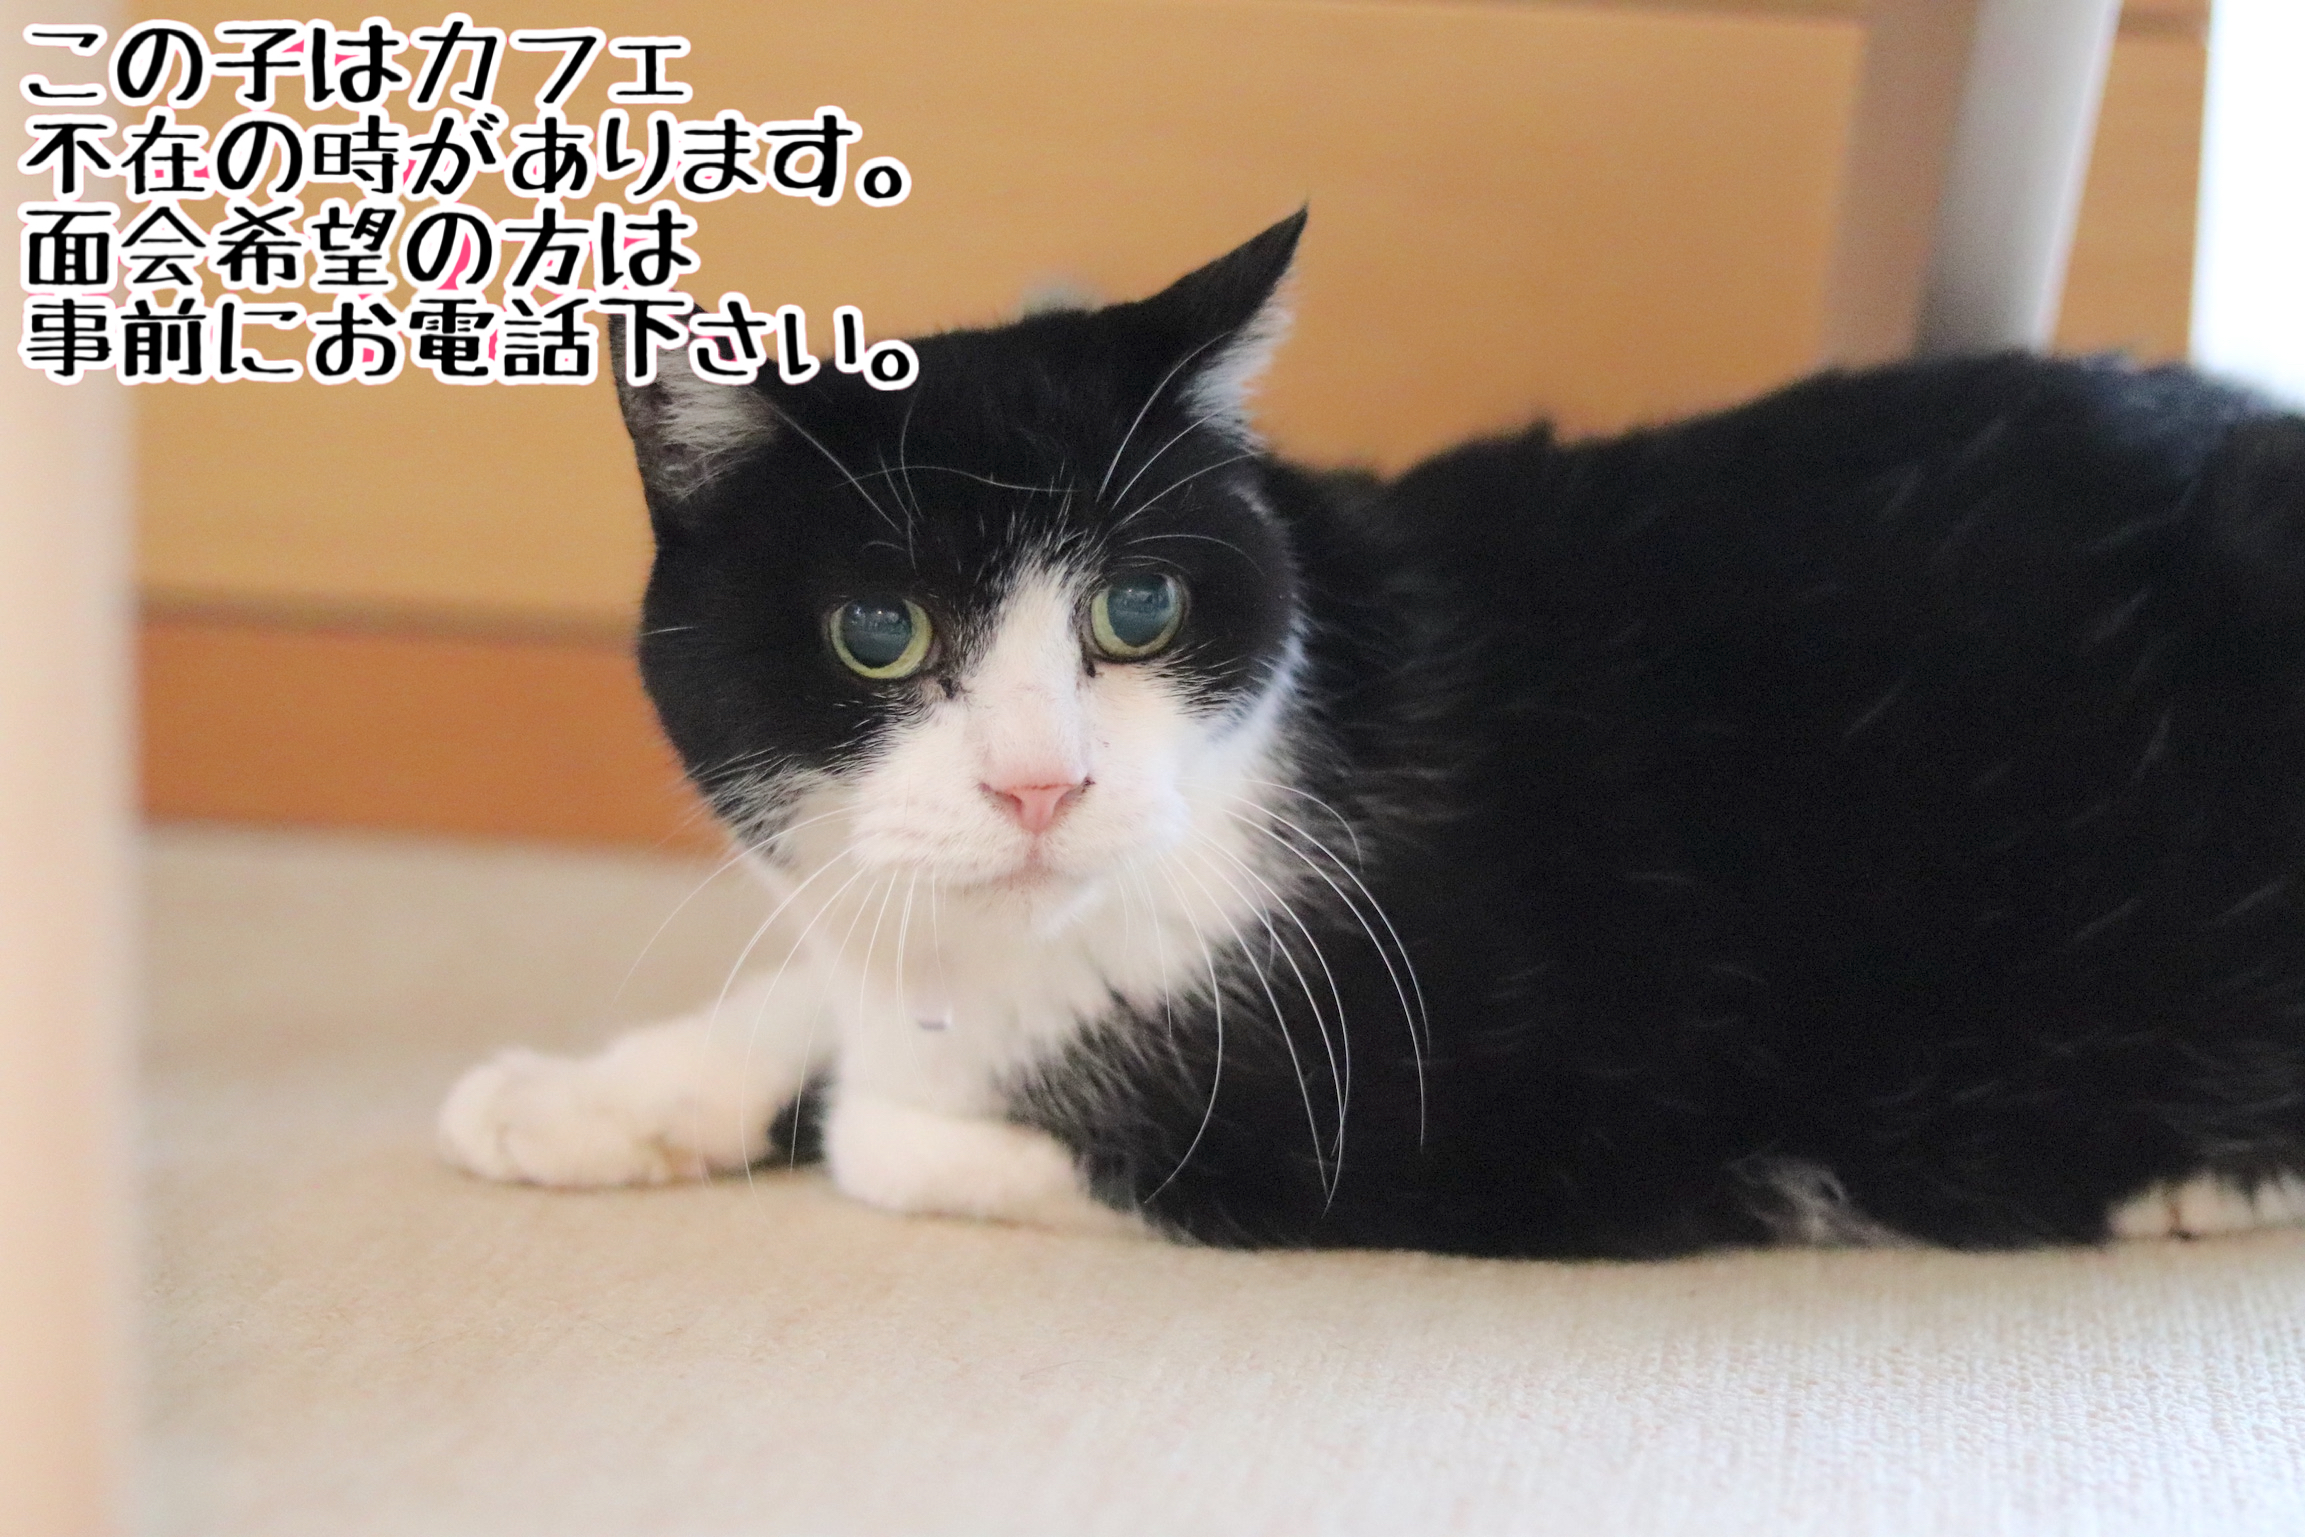 <ul>
<li>猫種：日本猫</li>
<li>名前（性別）：まる(女の子)</li>
<li>年齢：2005年2月頃生まれ</li>
<li>保護経緯：飼い主が亡くなり、親族も引継いで飼うことが出来ない</li>
</ul>
